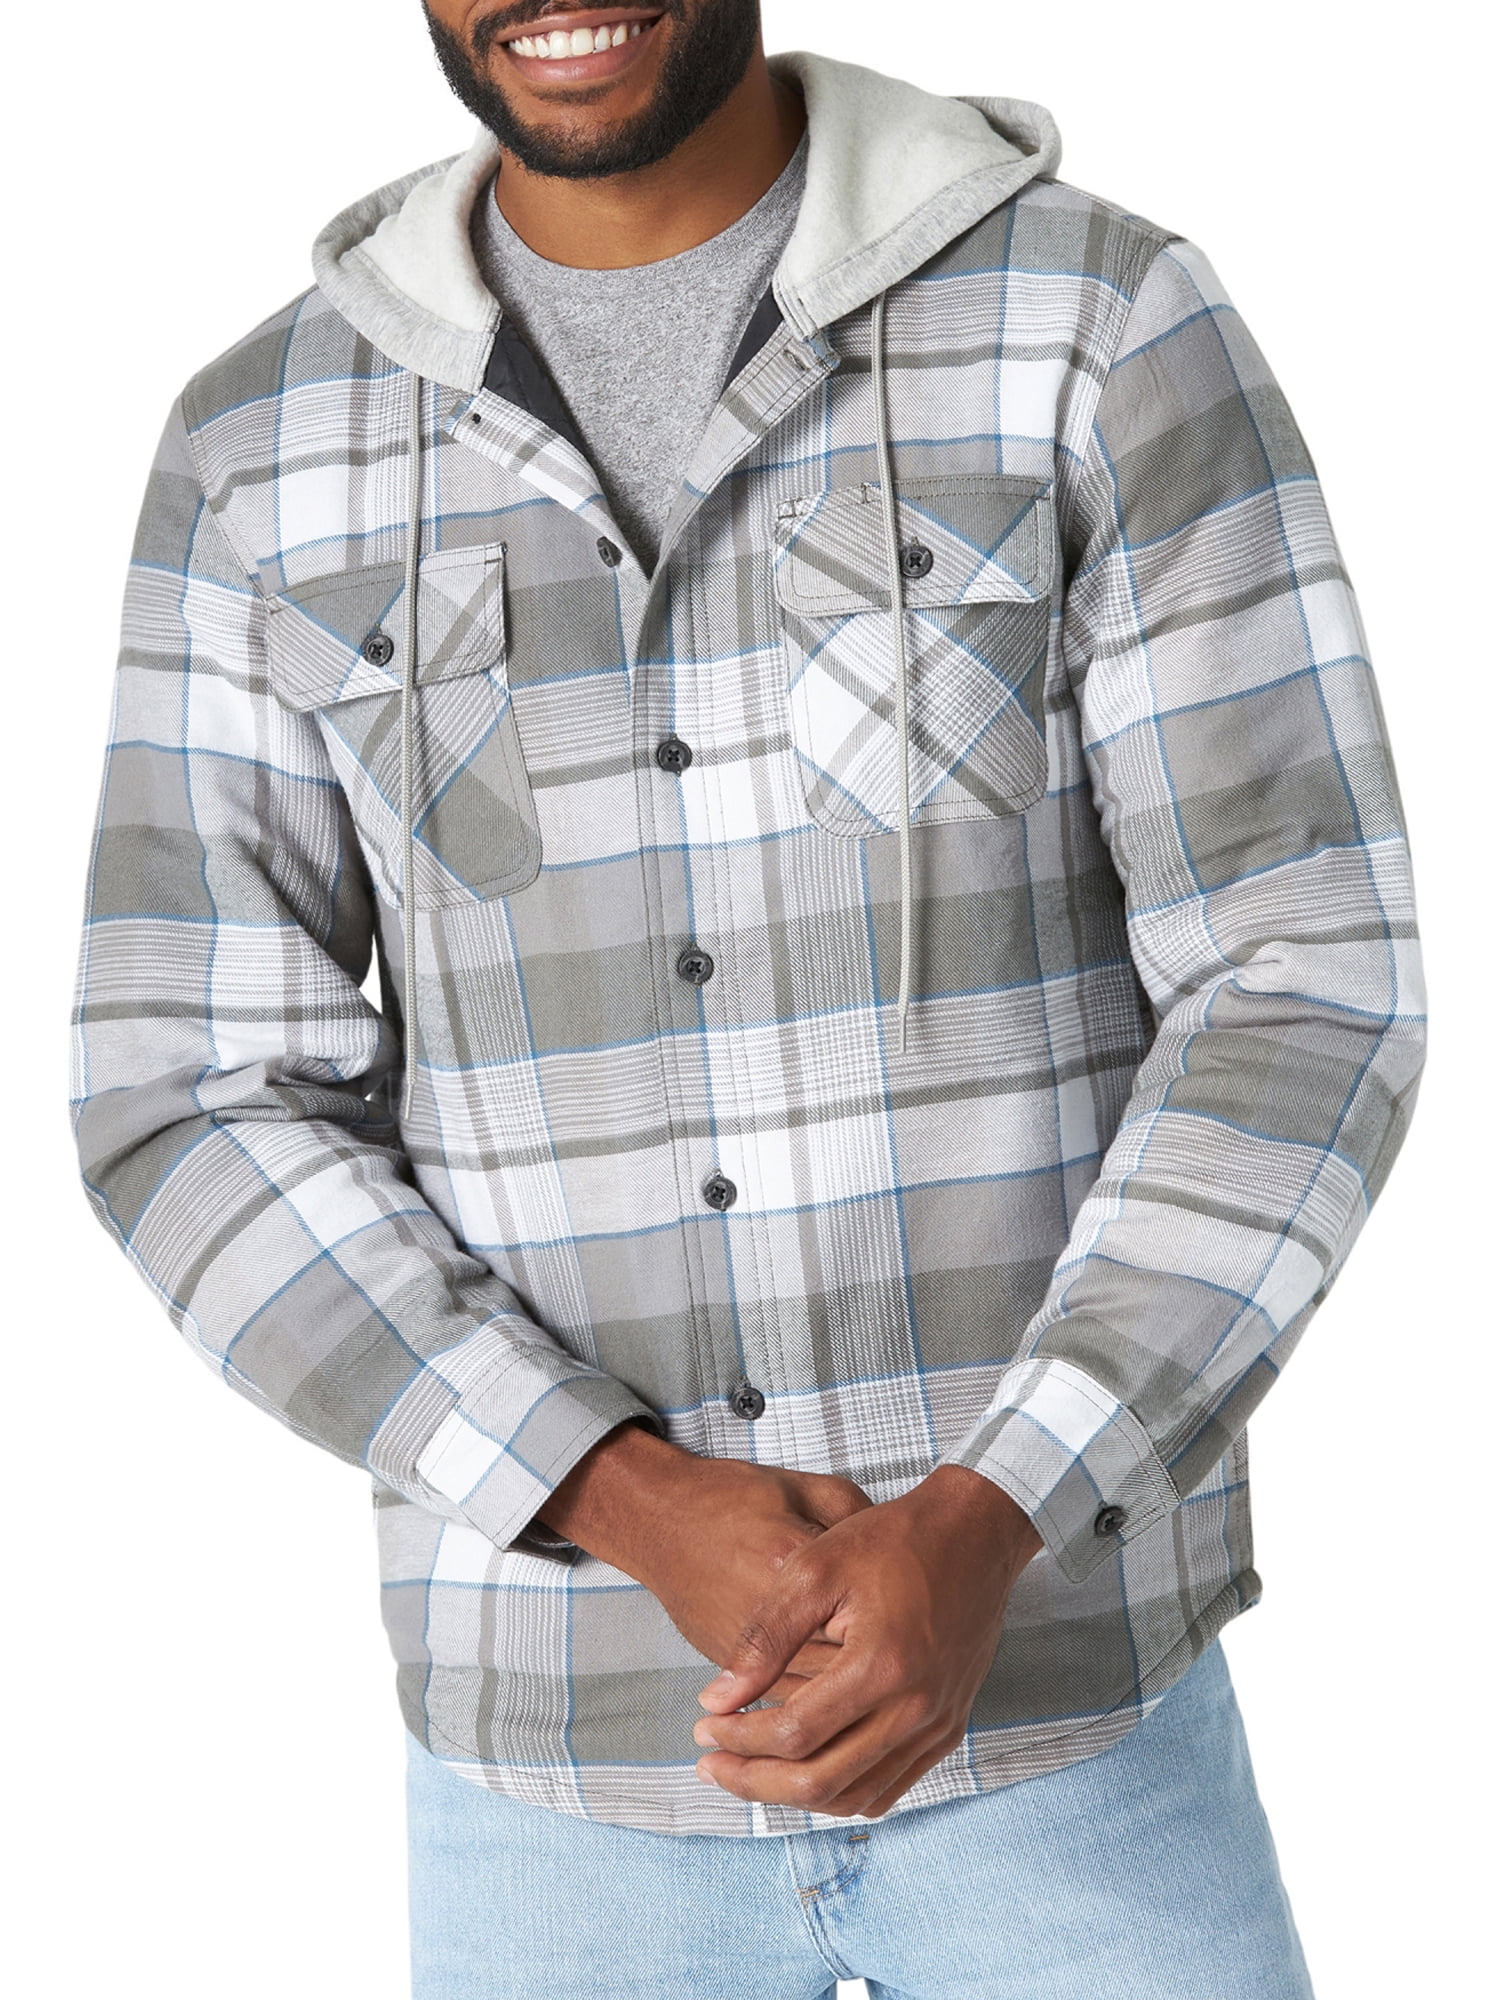 Steken Adelaide Cursus Wrangler Men's Quilted Lined Shirt Jacket - Walmart.com